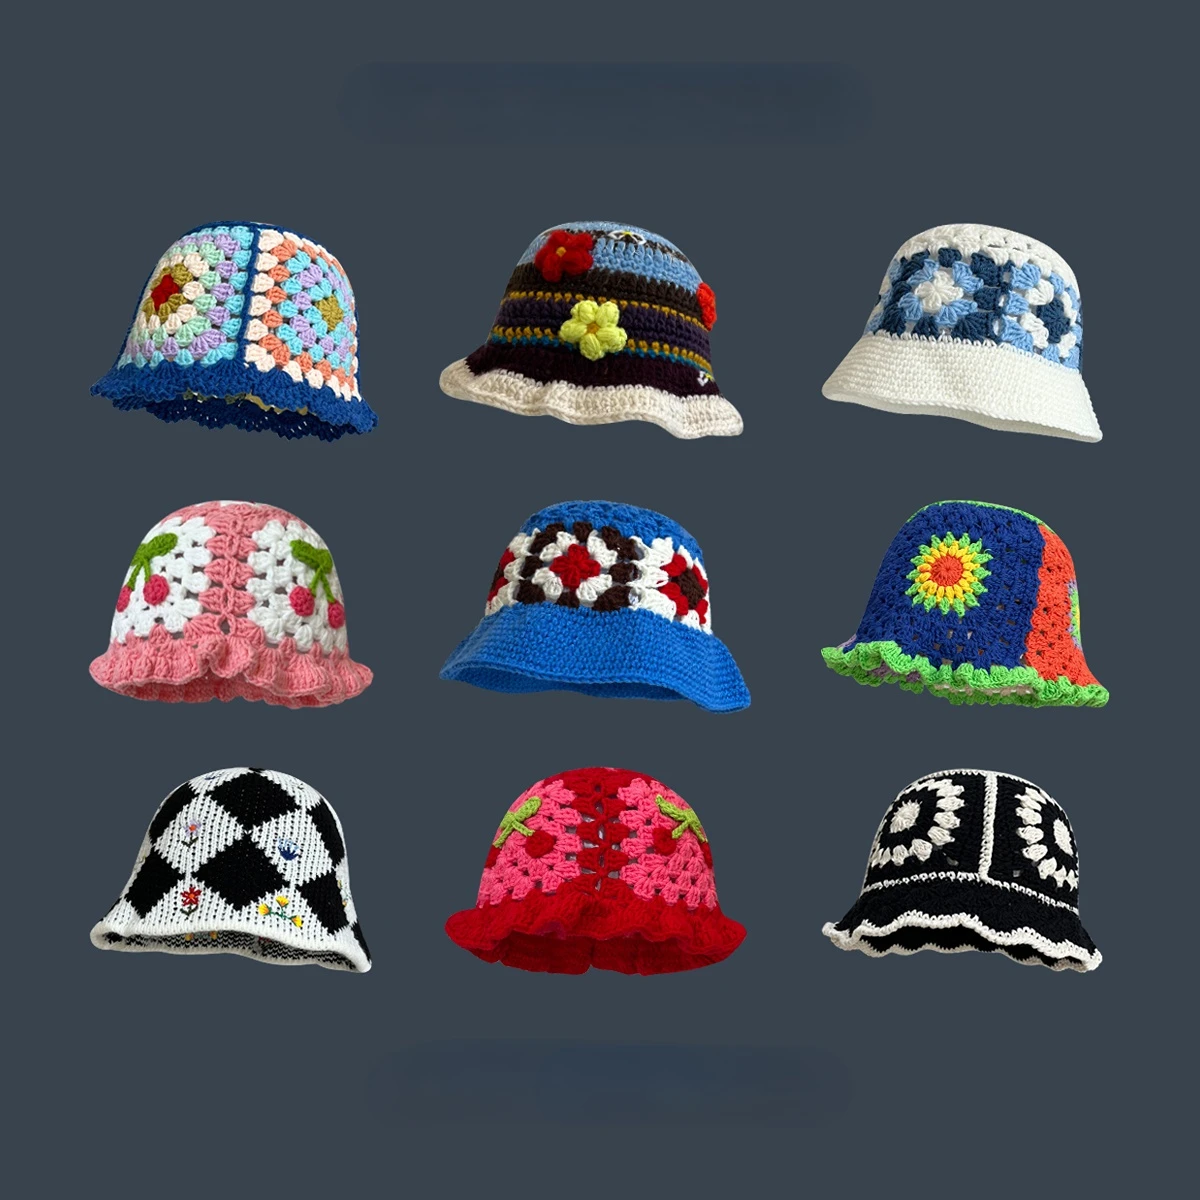 Chet flower bucket hat for girls korean hot travel beach panama caps design knitted hat thumb200